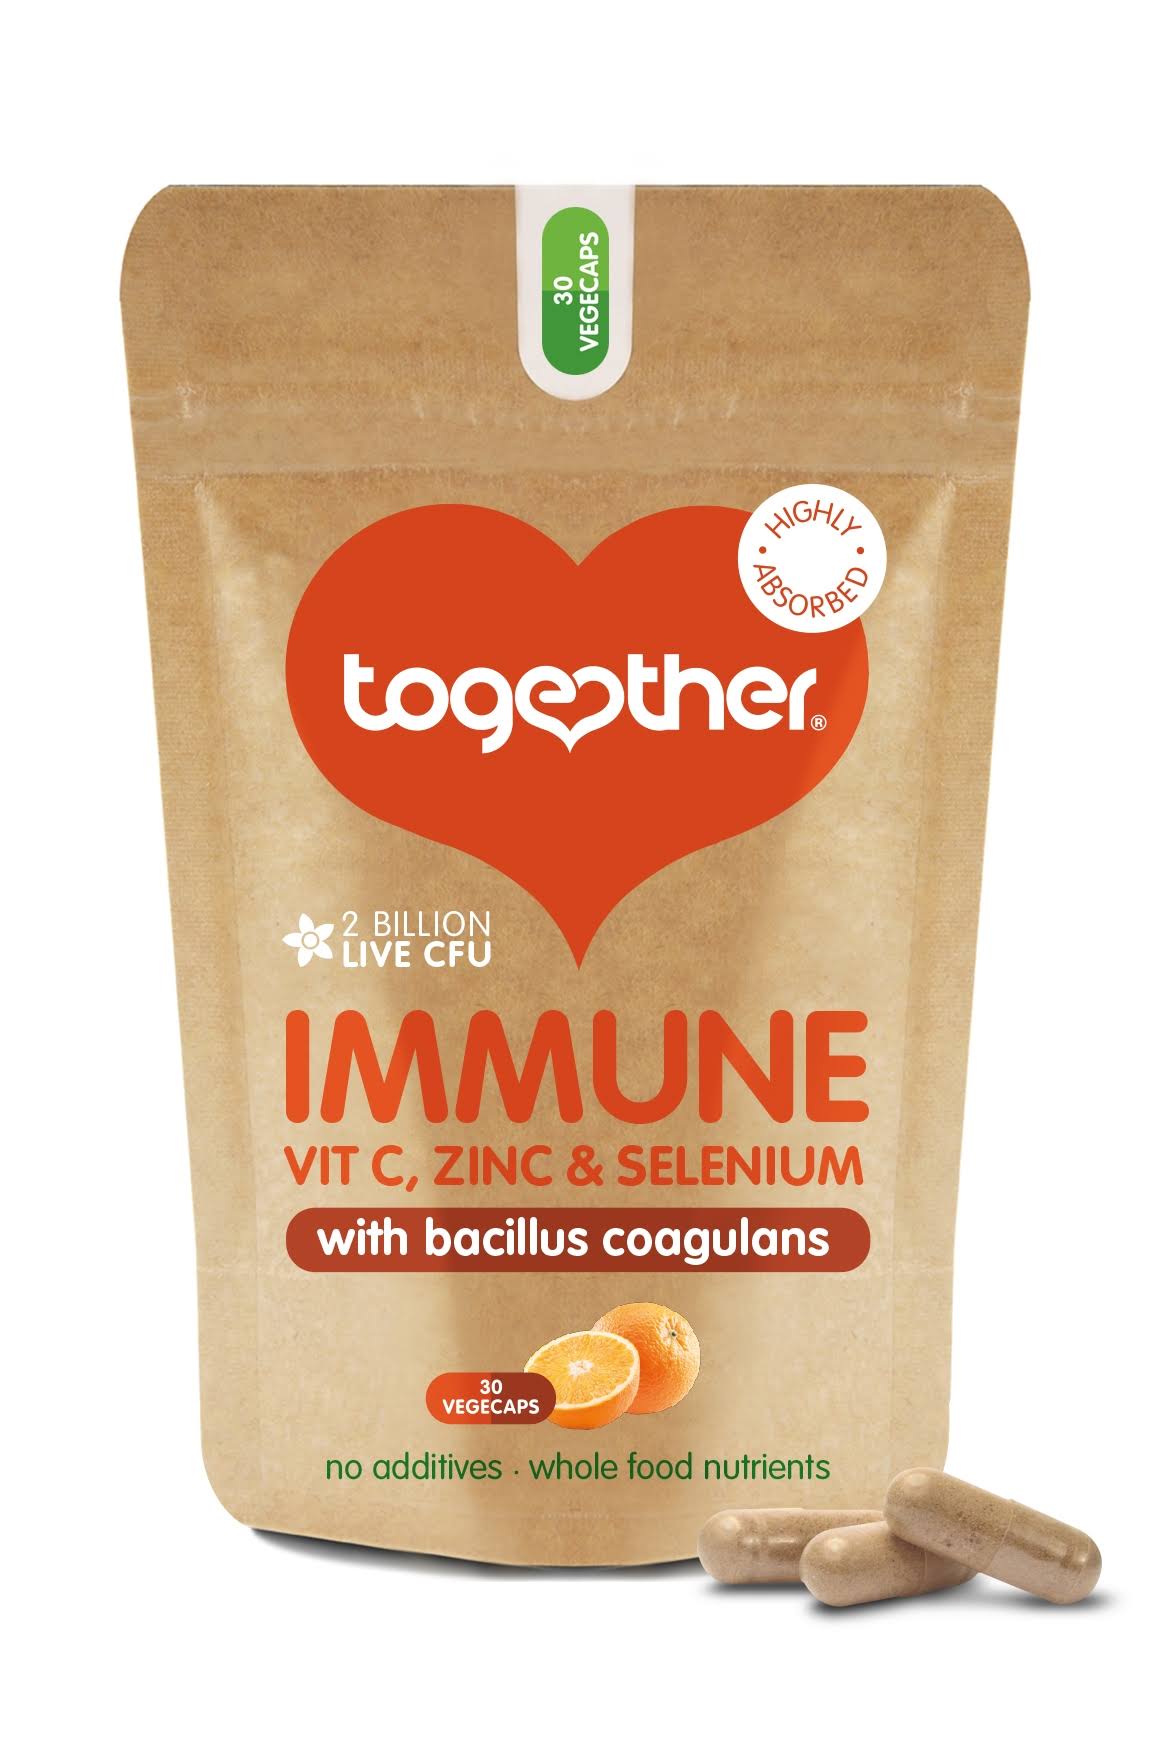 Together Health Immune Vit C Zinc and Selenium Supplement - 30 Capsules